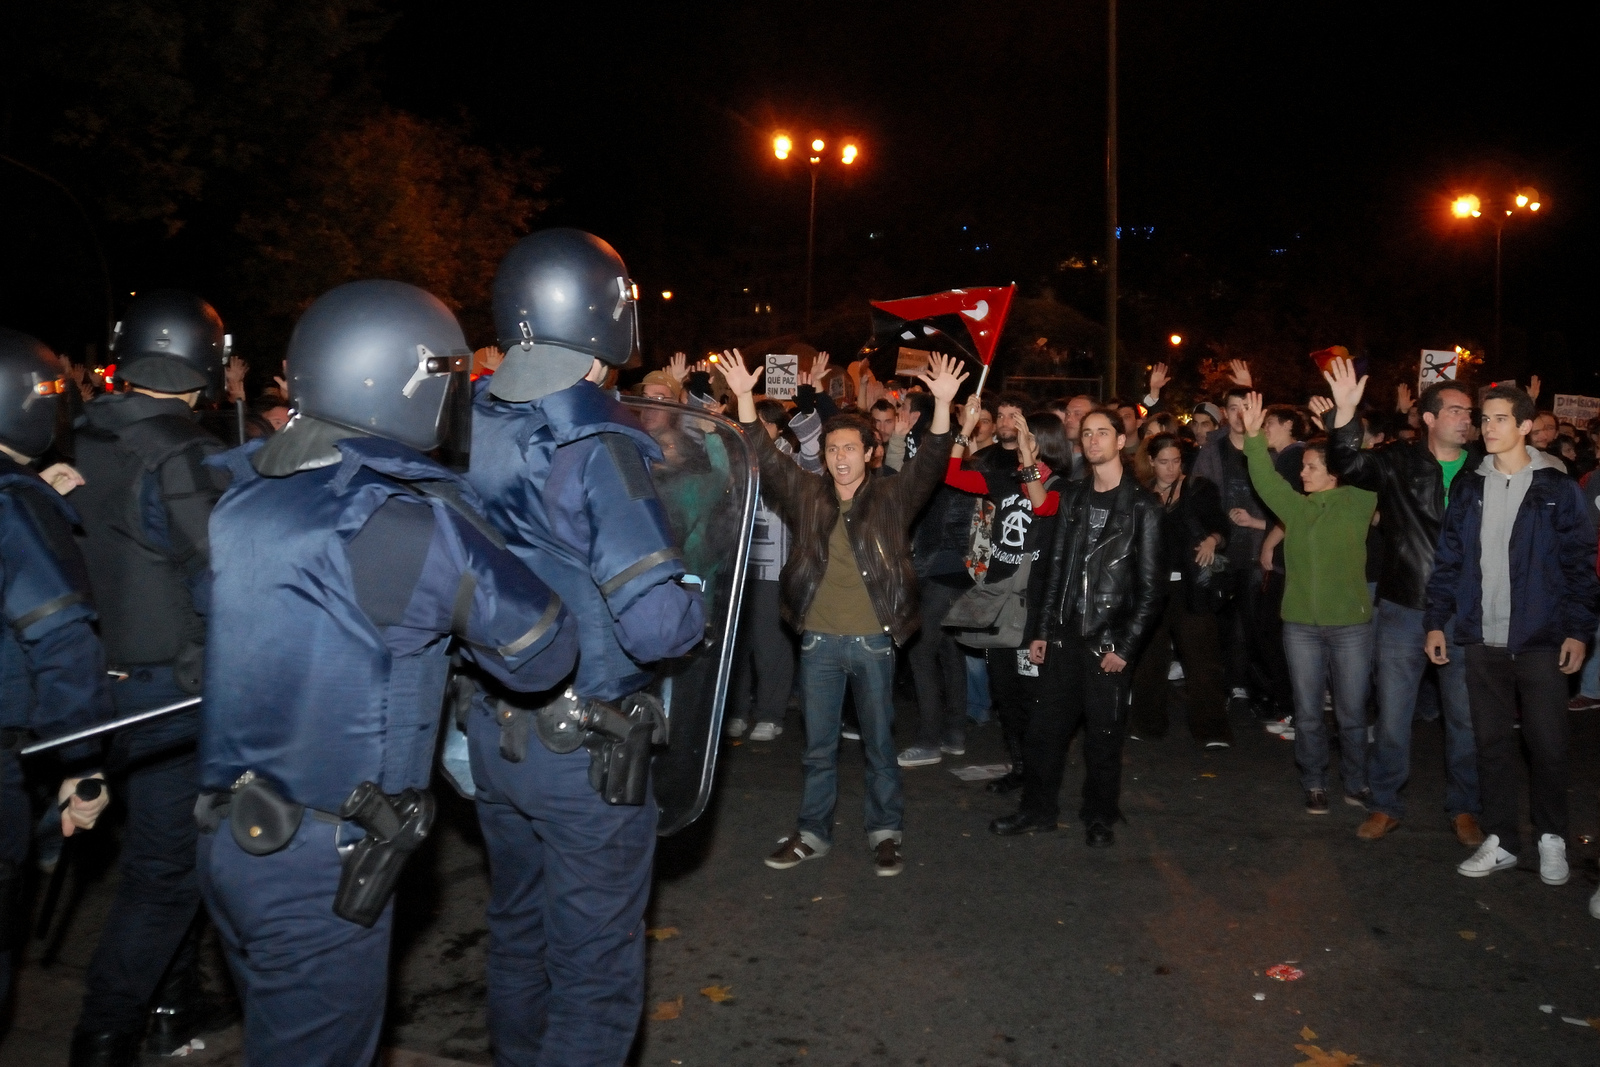 Auf dem Bild sind Demonstranten und Polizisten zu sehen